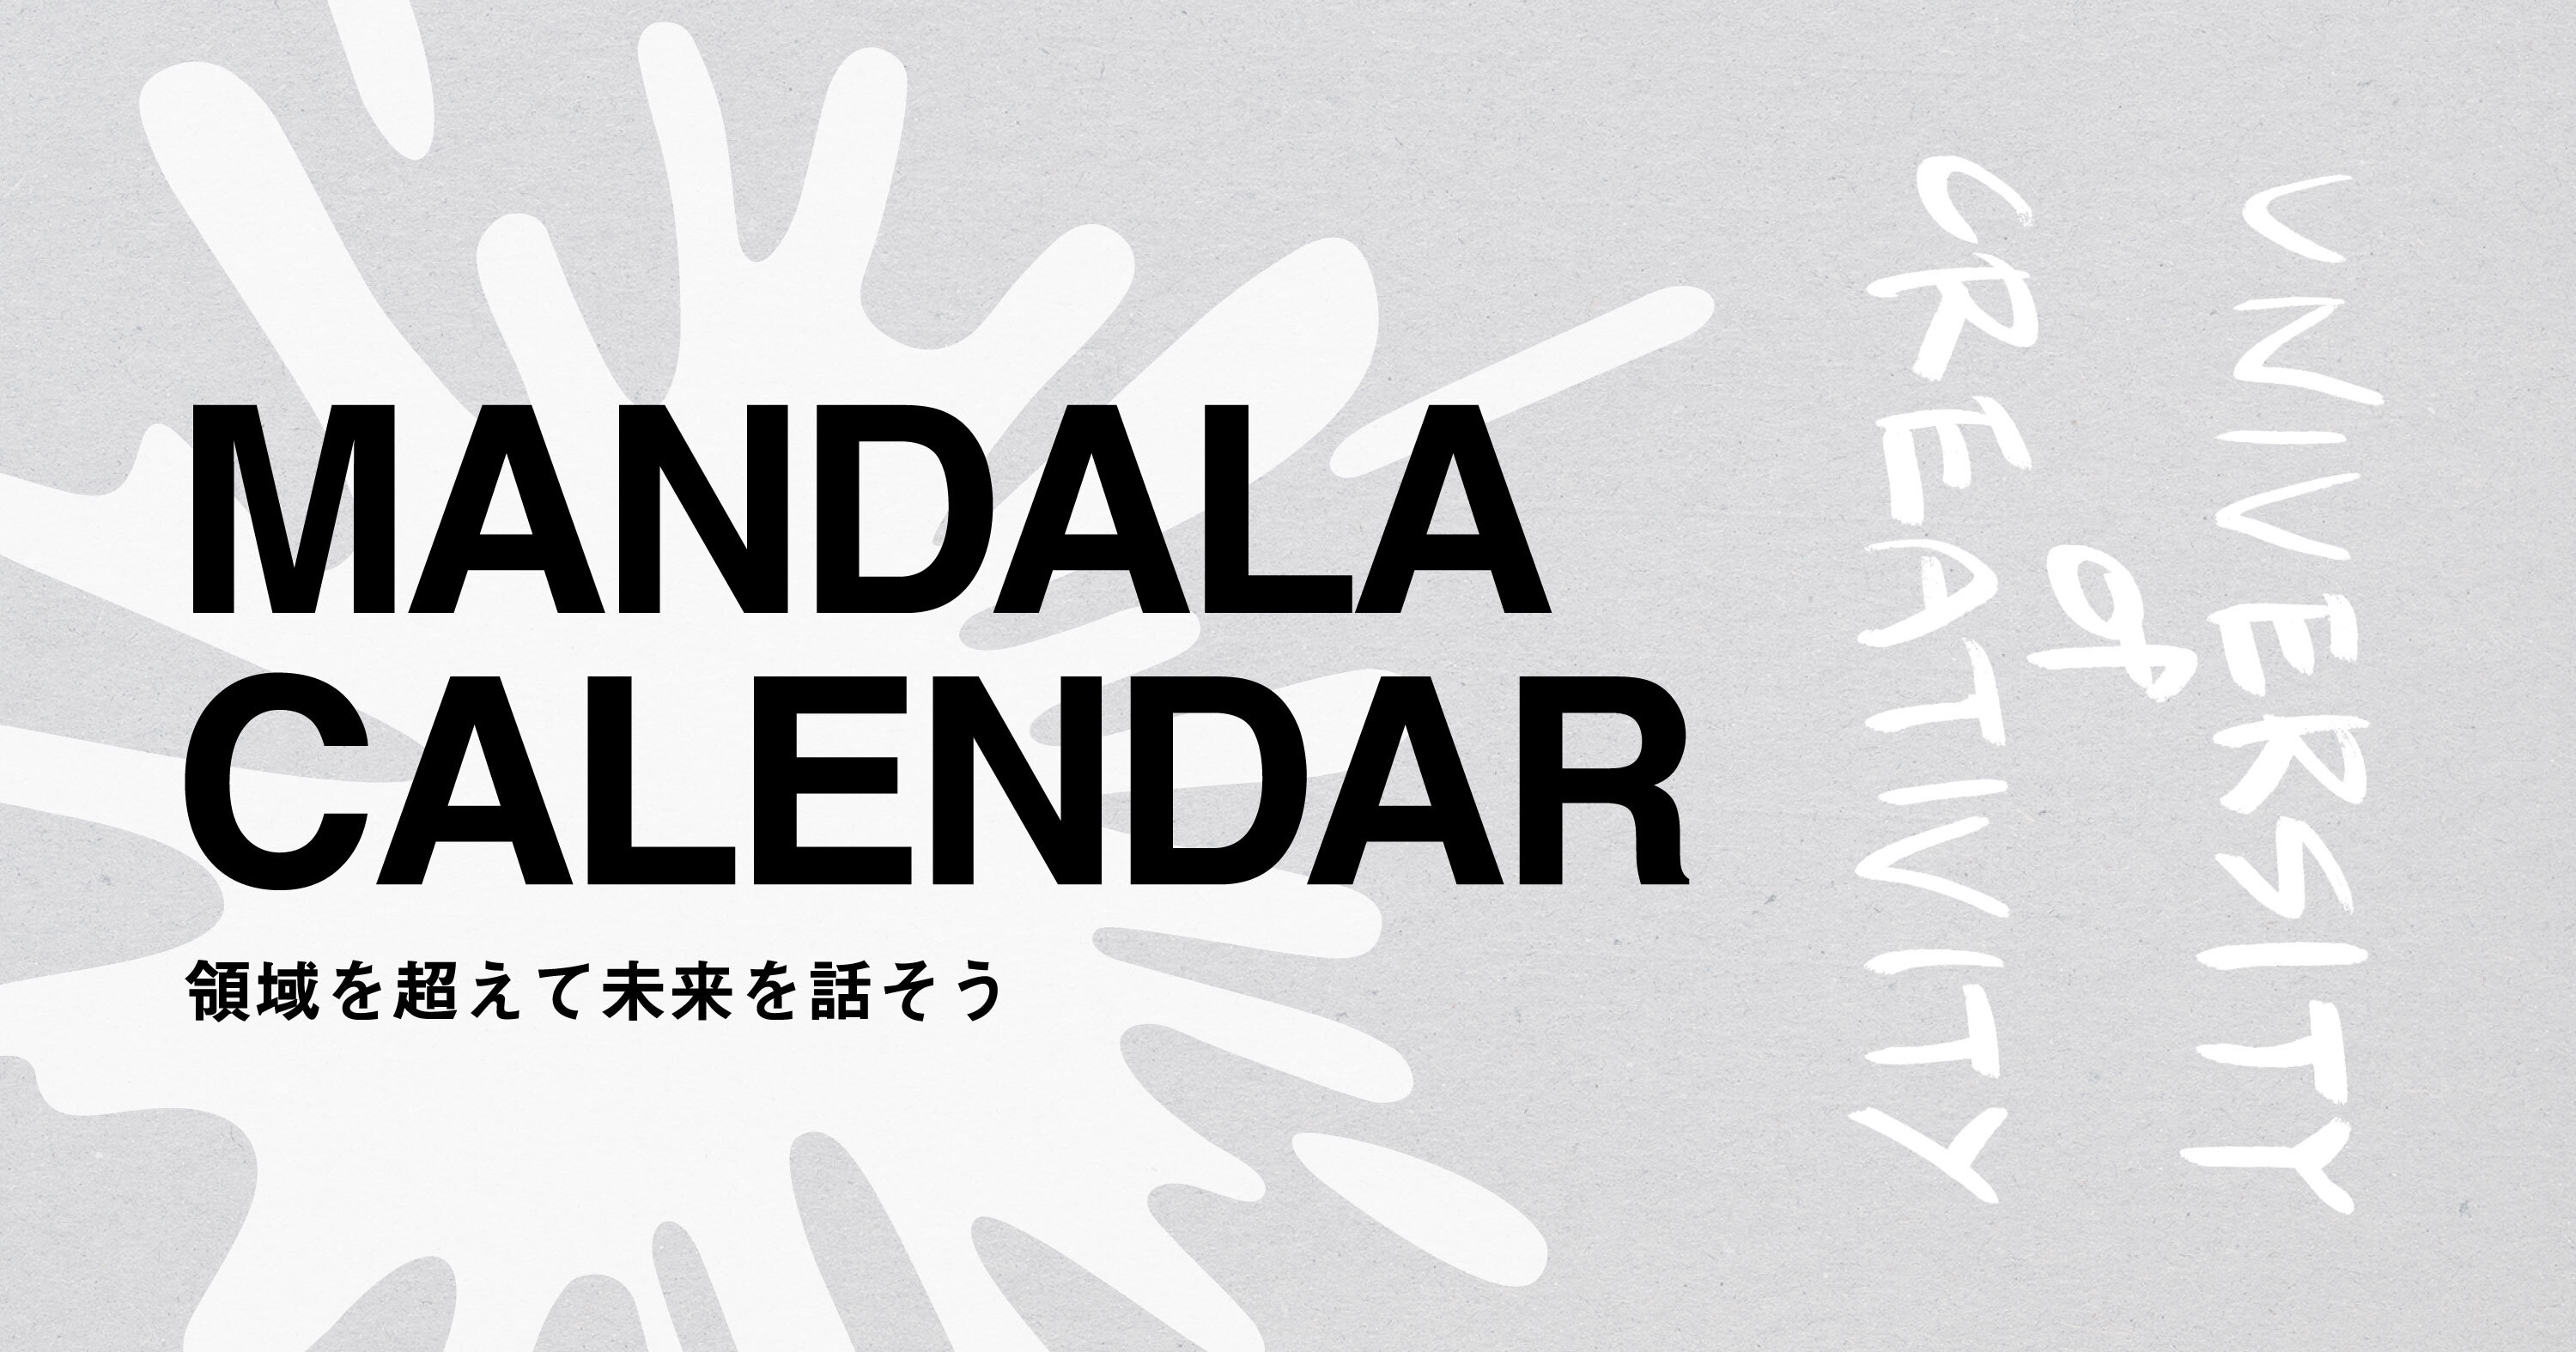 Mandala Calendar University Of Creativity